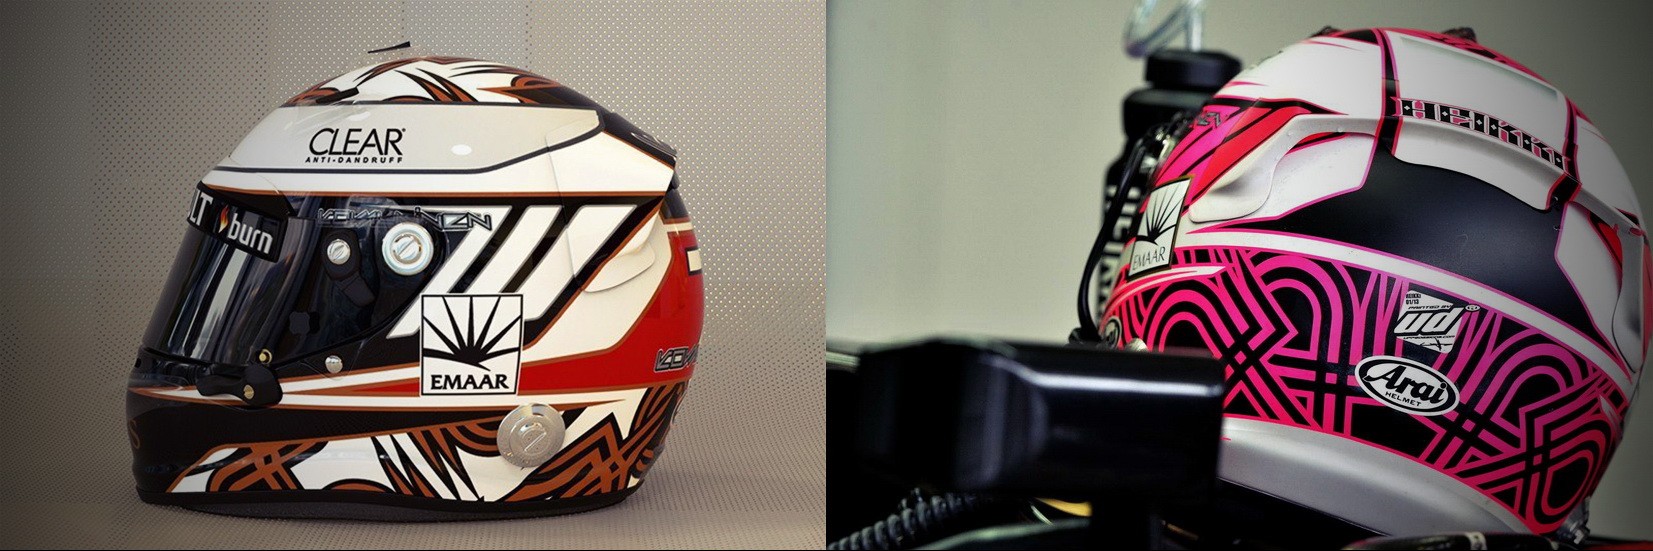 Шлем Хейкки Ковалайнена на сезон 2013 года | 2013 helmet of Heikki Kovalainen